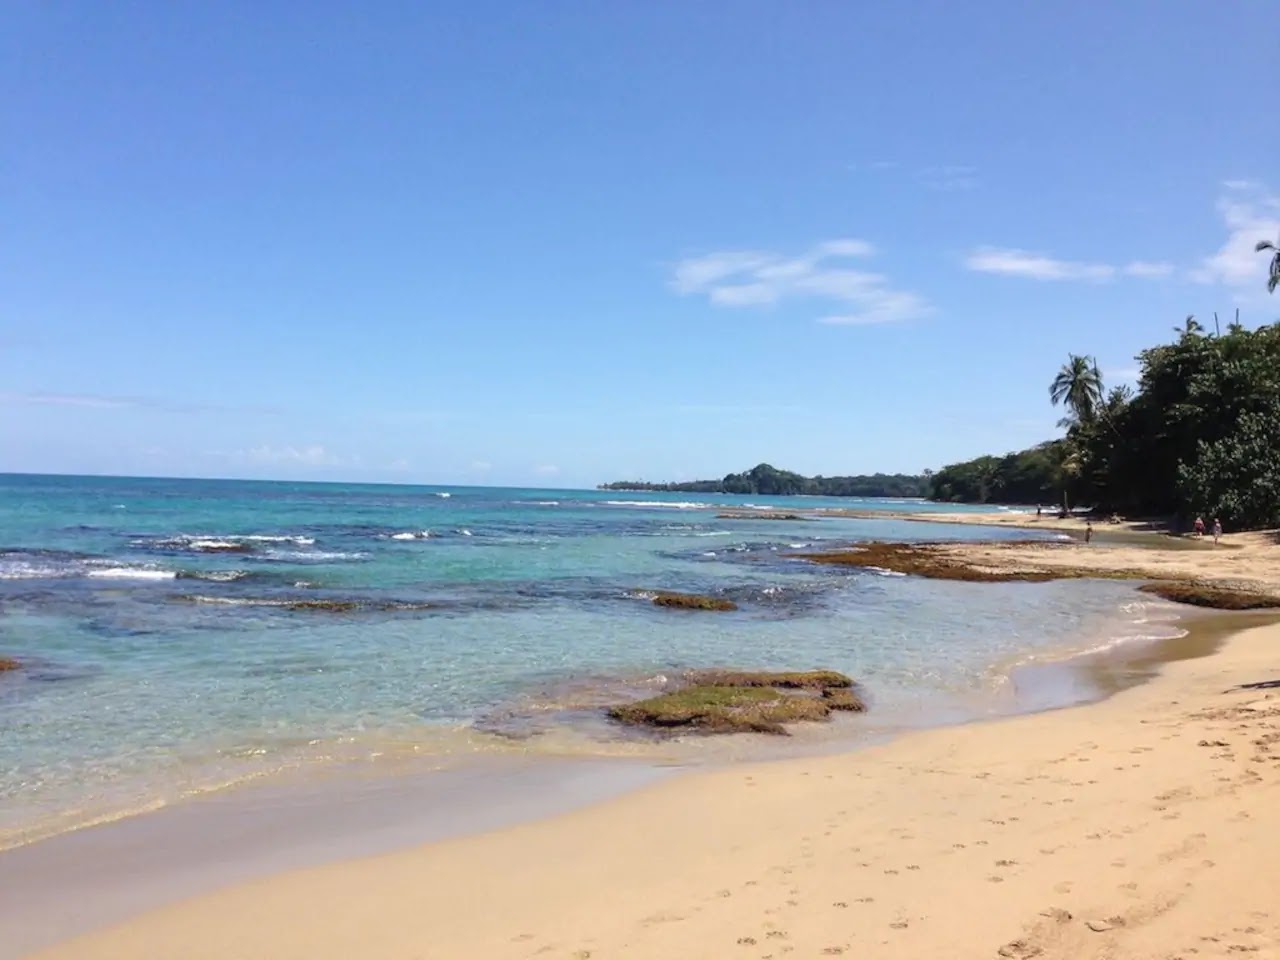 Chiquita beach'in fotoğrafı geniş plaj ile birlikte